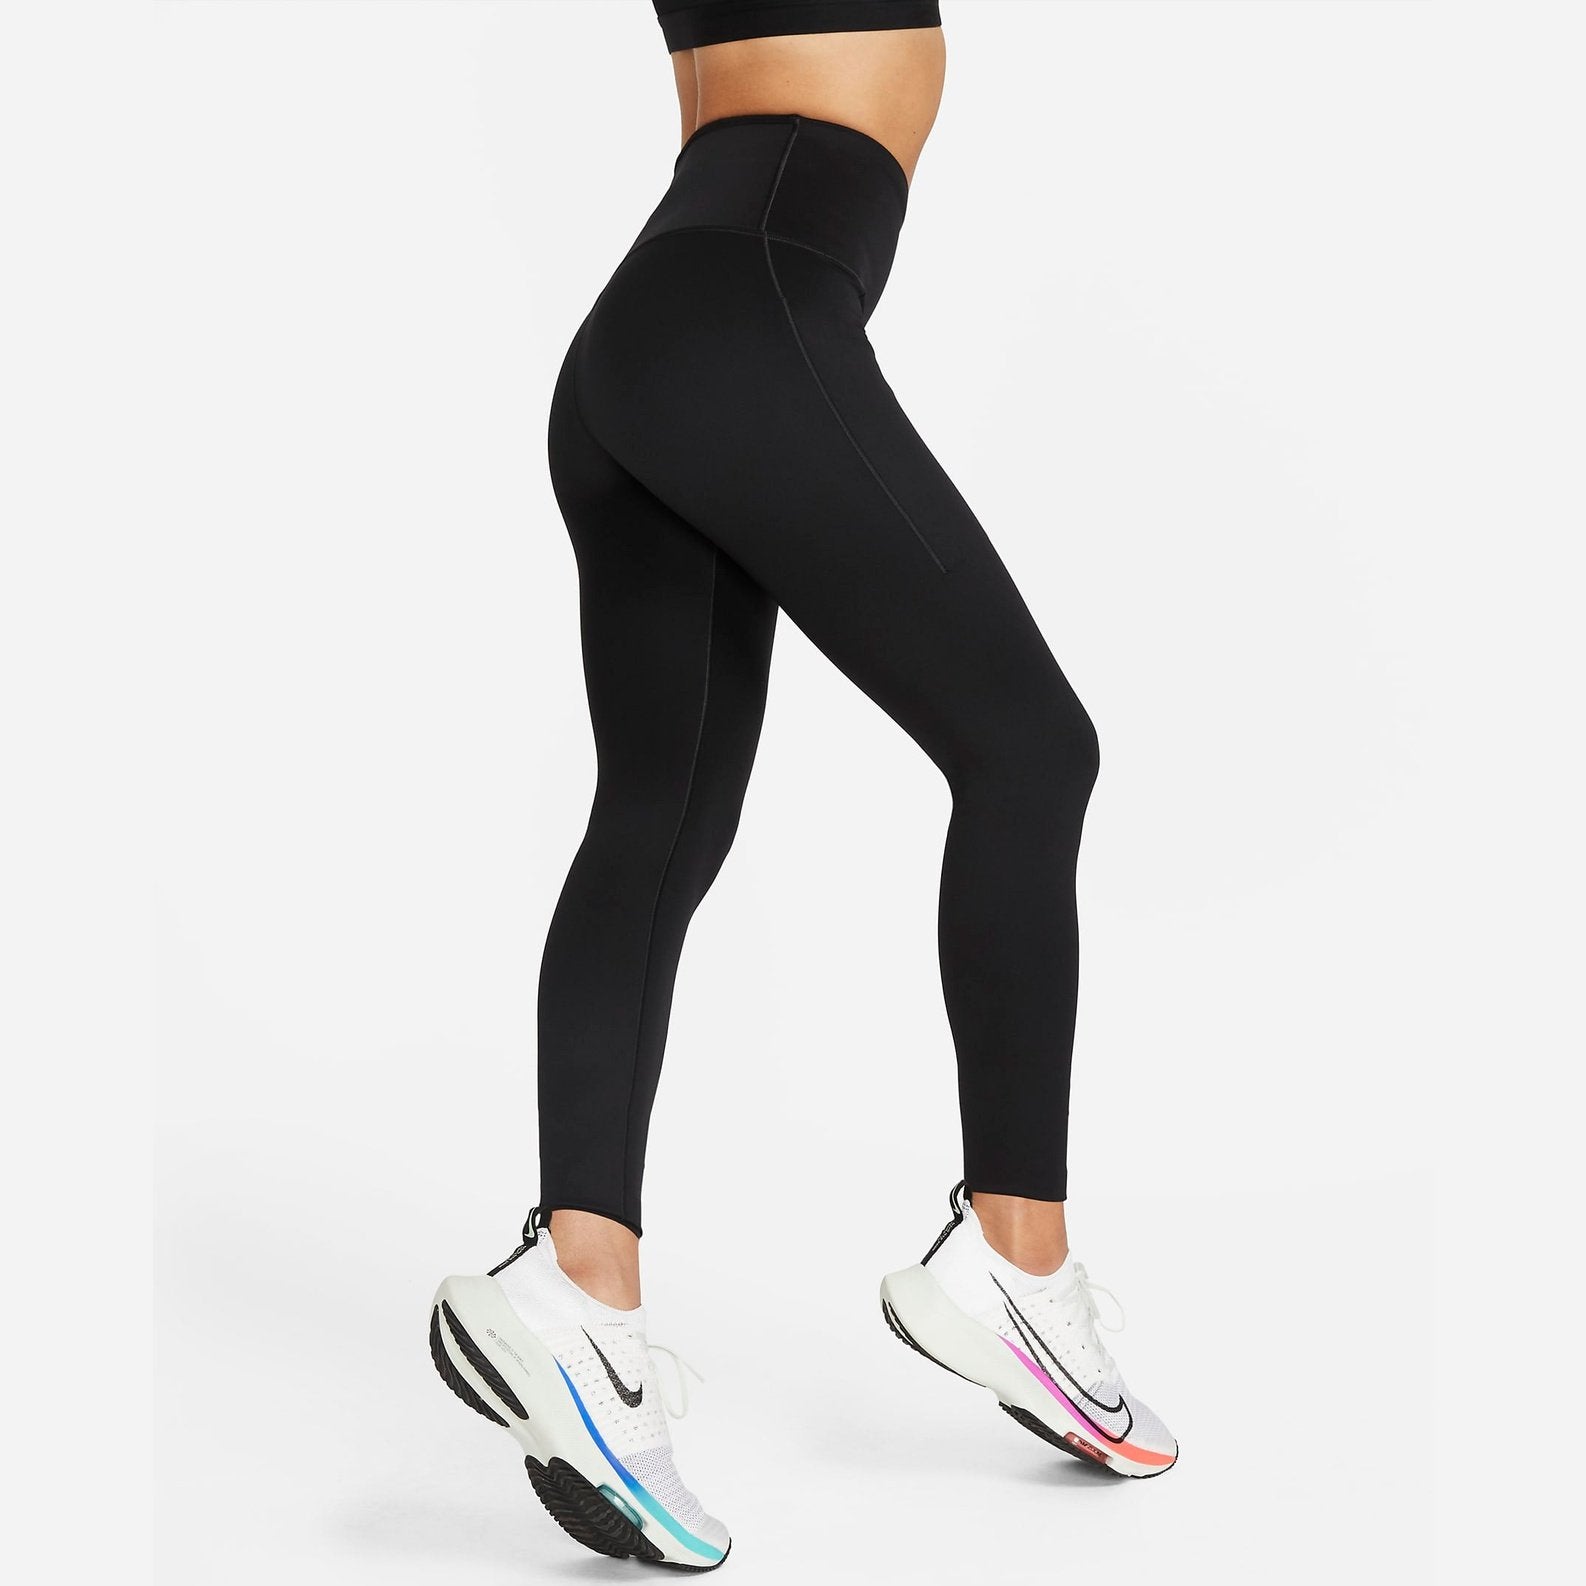 Nike Go High Rise 7/8 Length Legging Womens